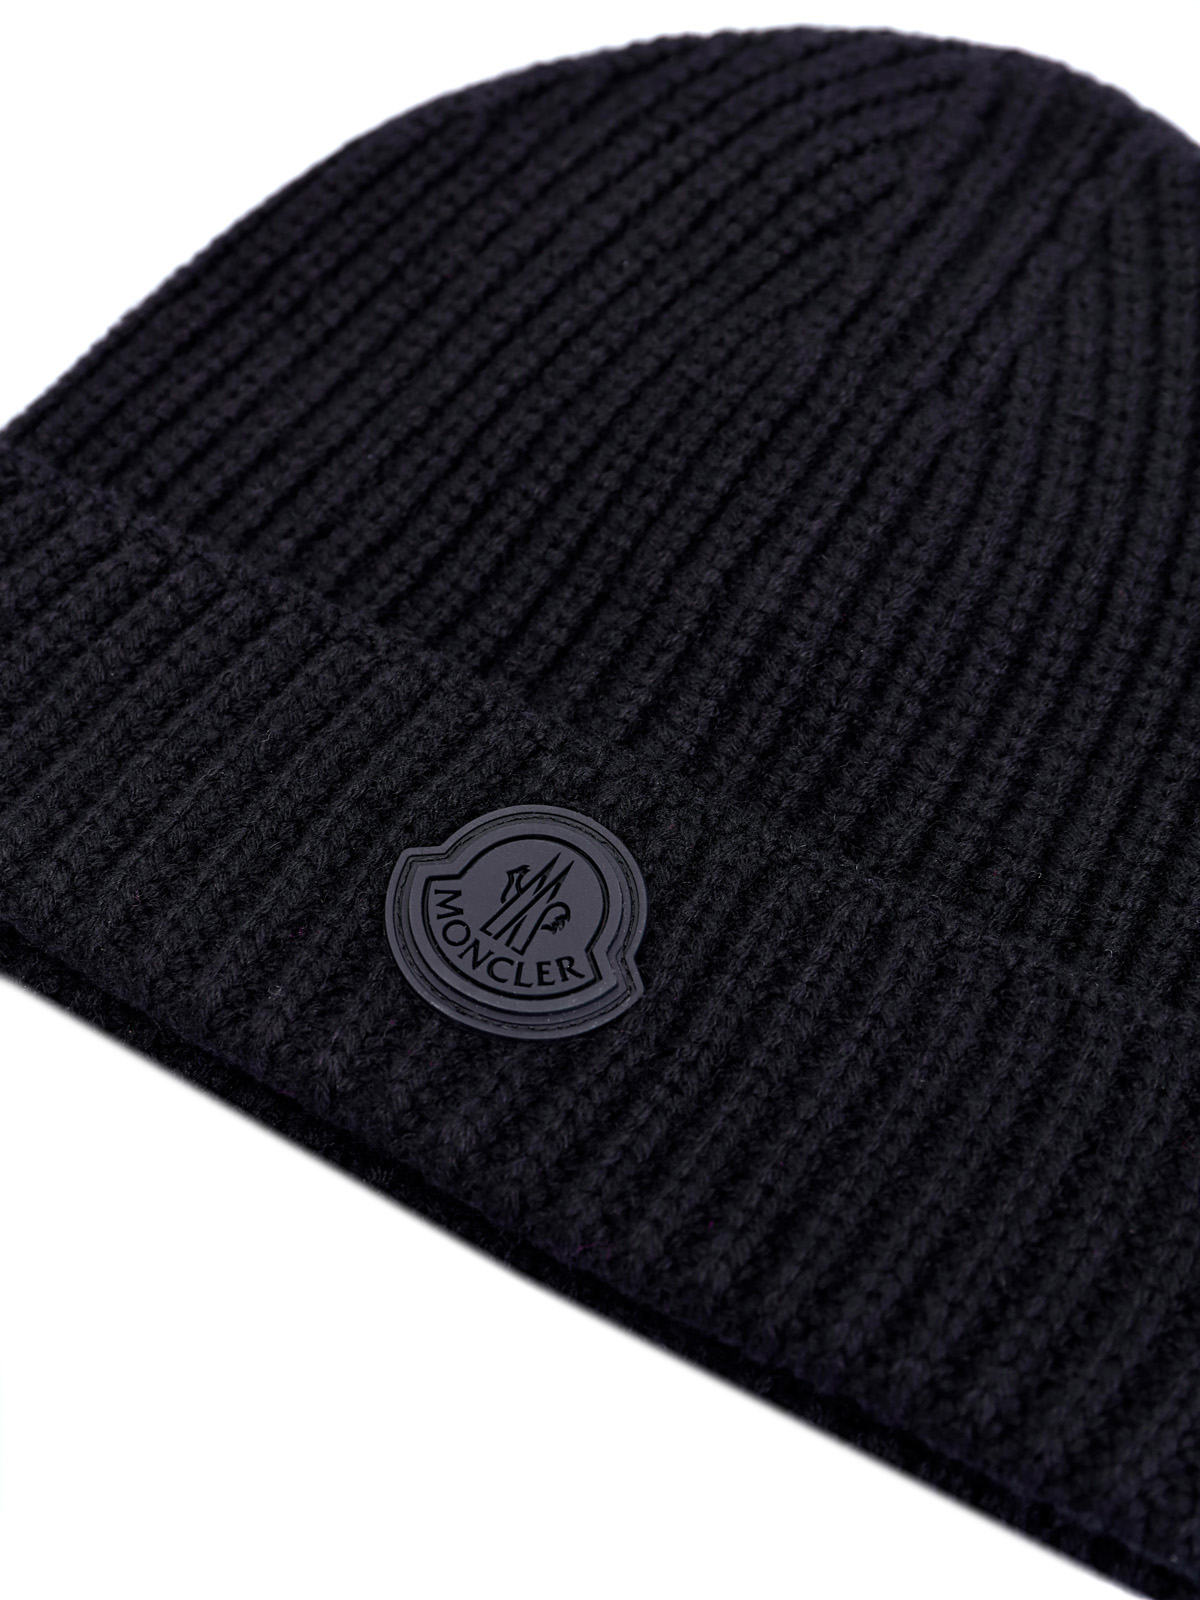 Шерстяная шапка с волокнами кашемира и логотипом в тон MONCLER, цвет черный, размер 40.5;41;41.5;42;42.5;43;43.5;44 - фото 3